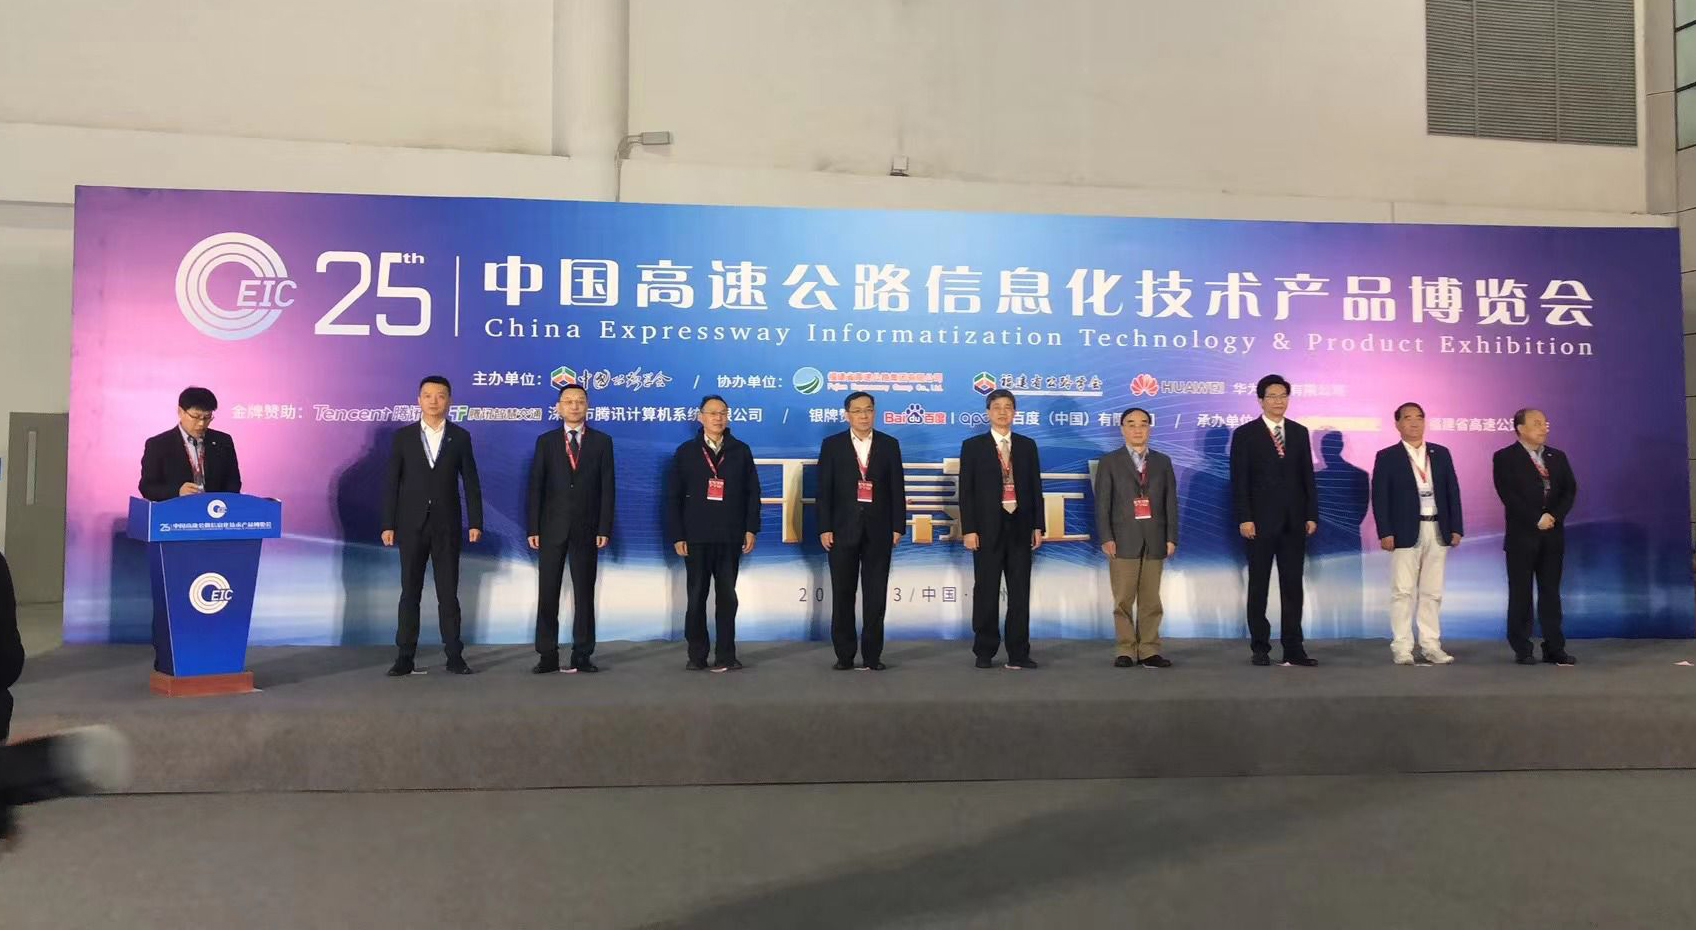 热烈庆祝第二十五届中国高速公路信息化大会暨技术产品博览会圆满结束